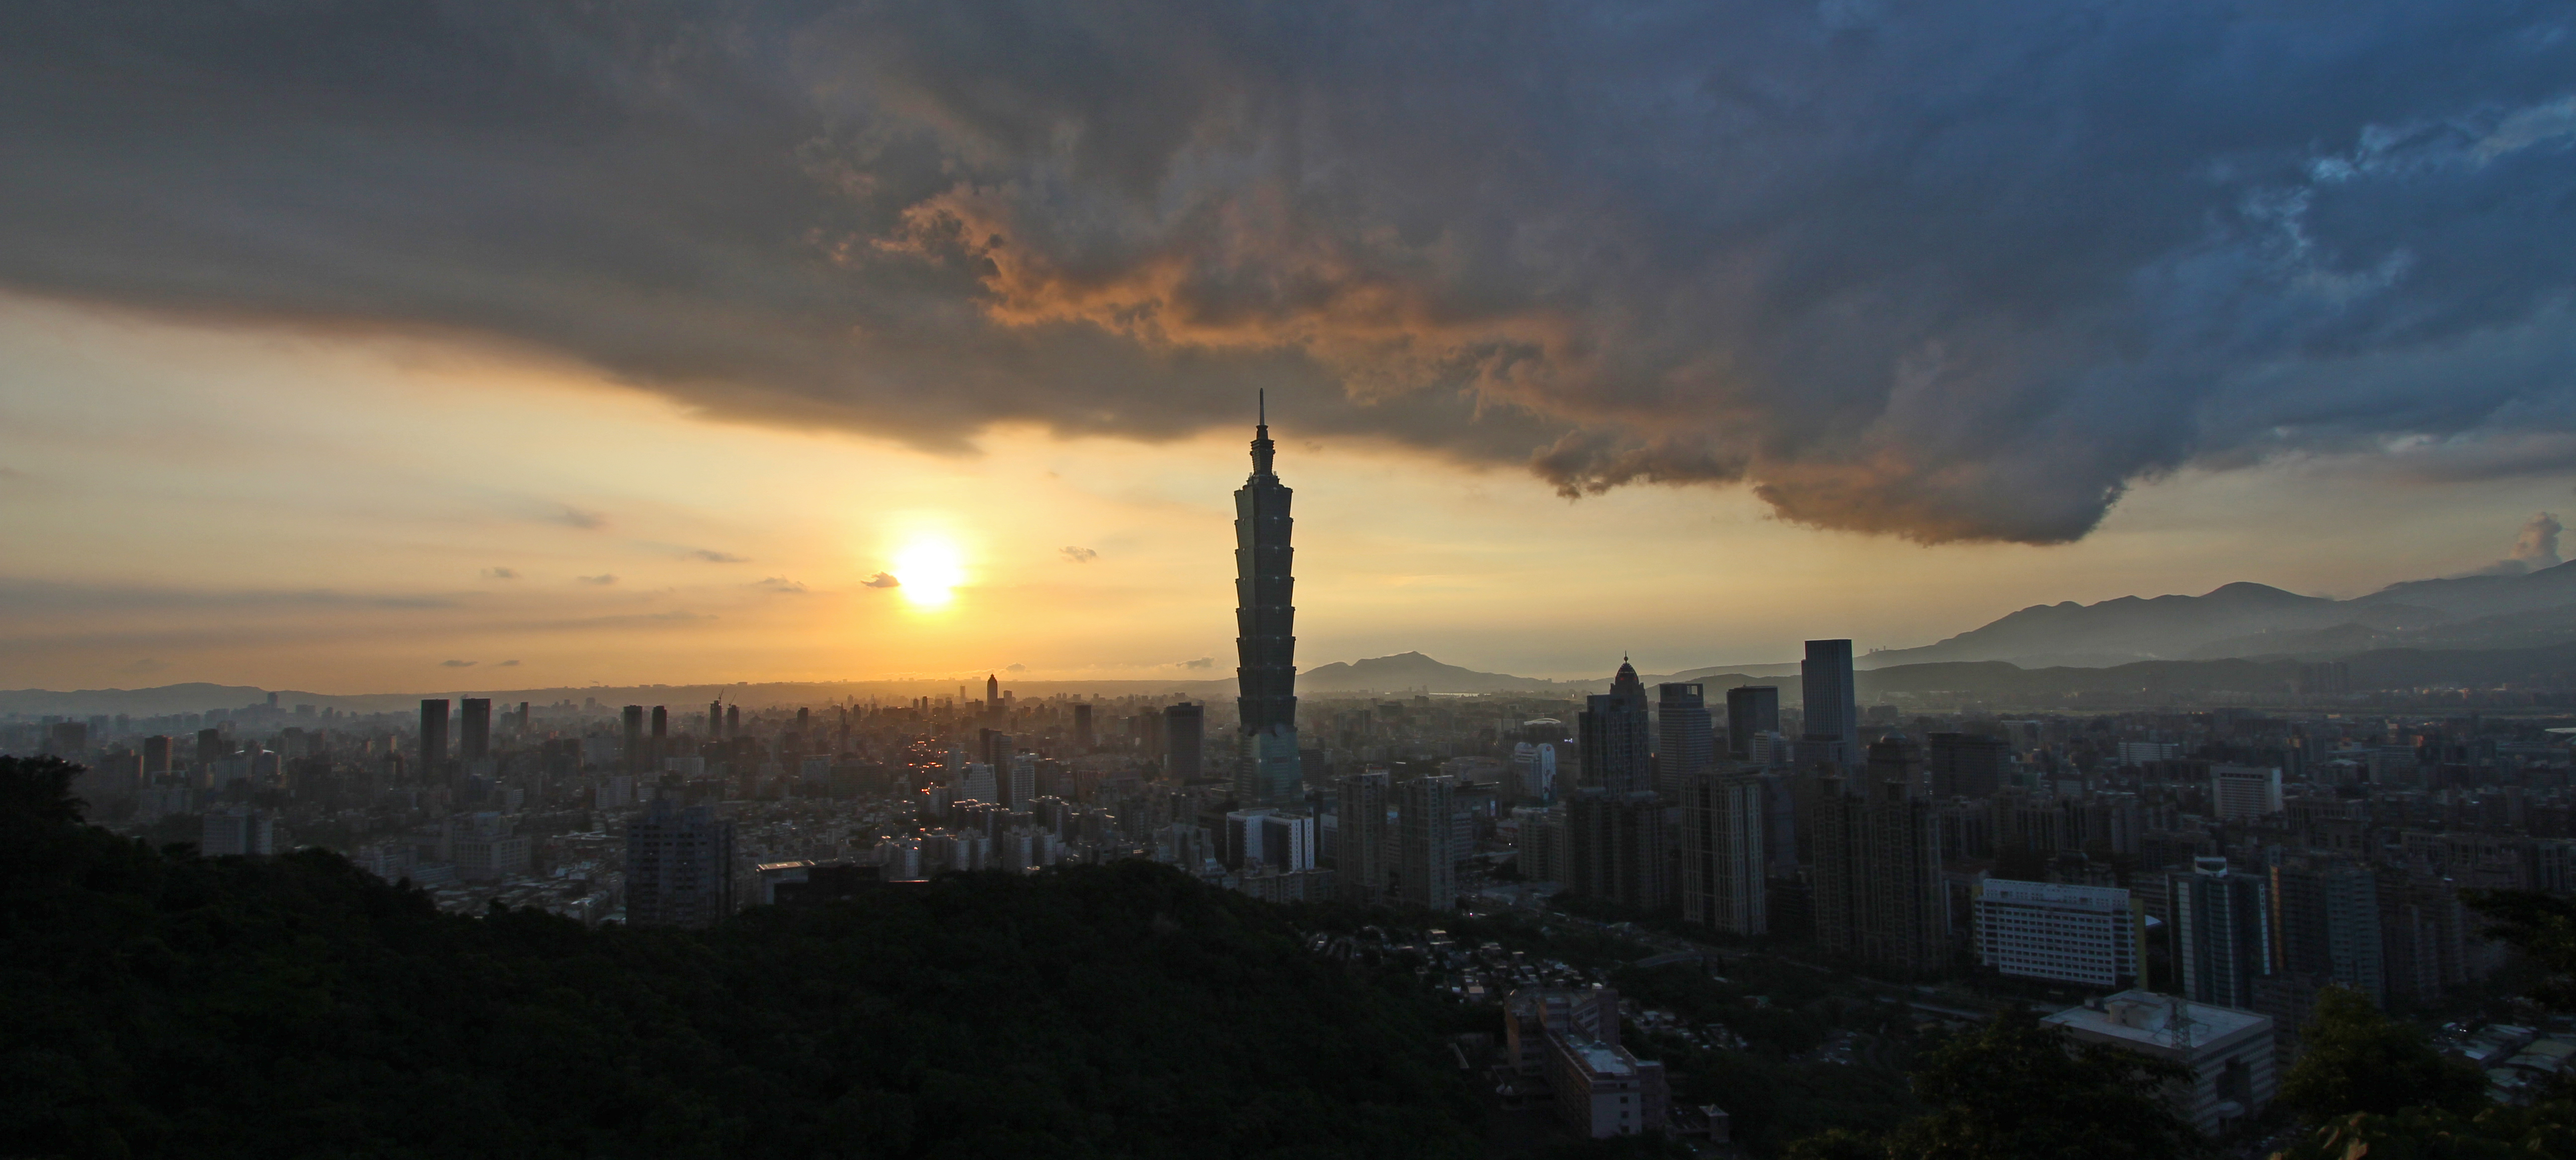 Скачать обои бесплатно Города, Облака, Тайвань, Тайбэй, Сделано Человеком картинка на рабочий стол ПК